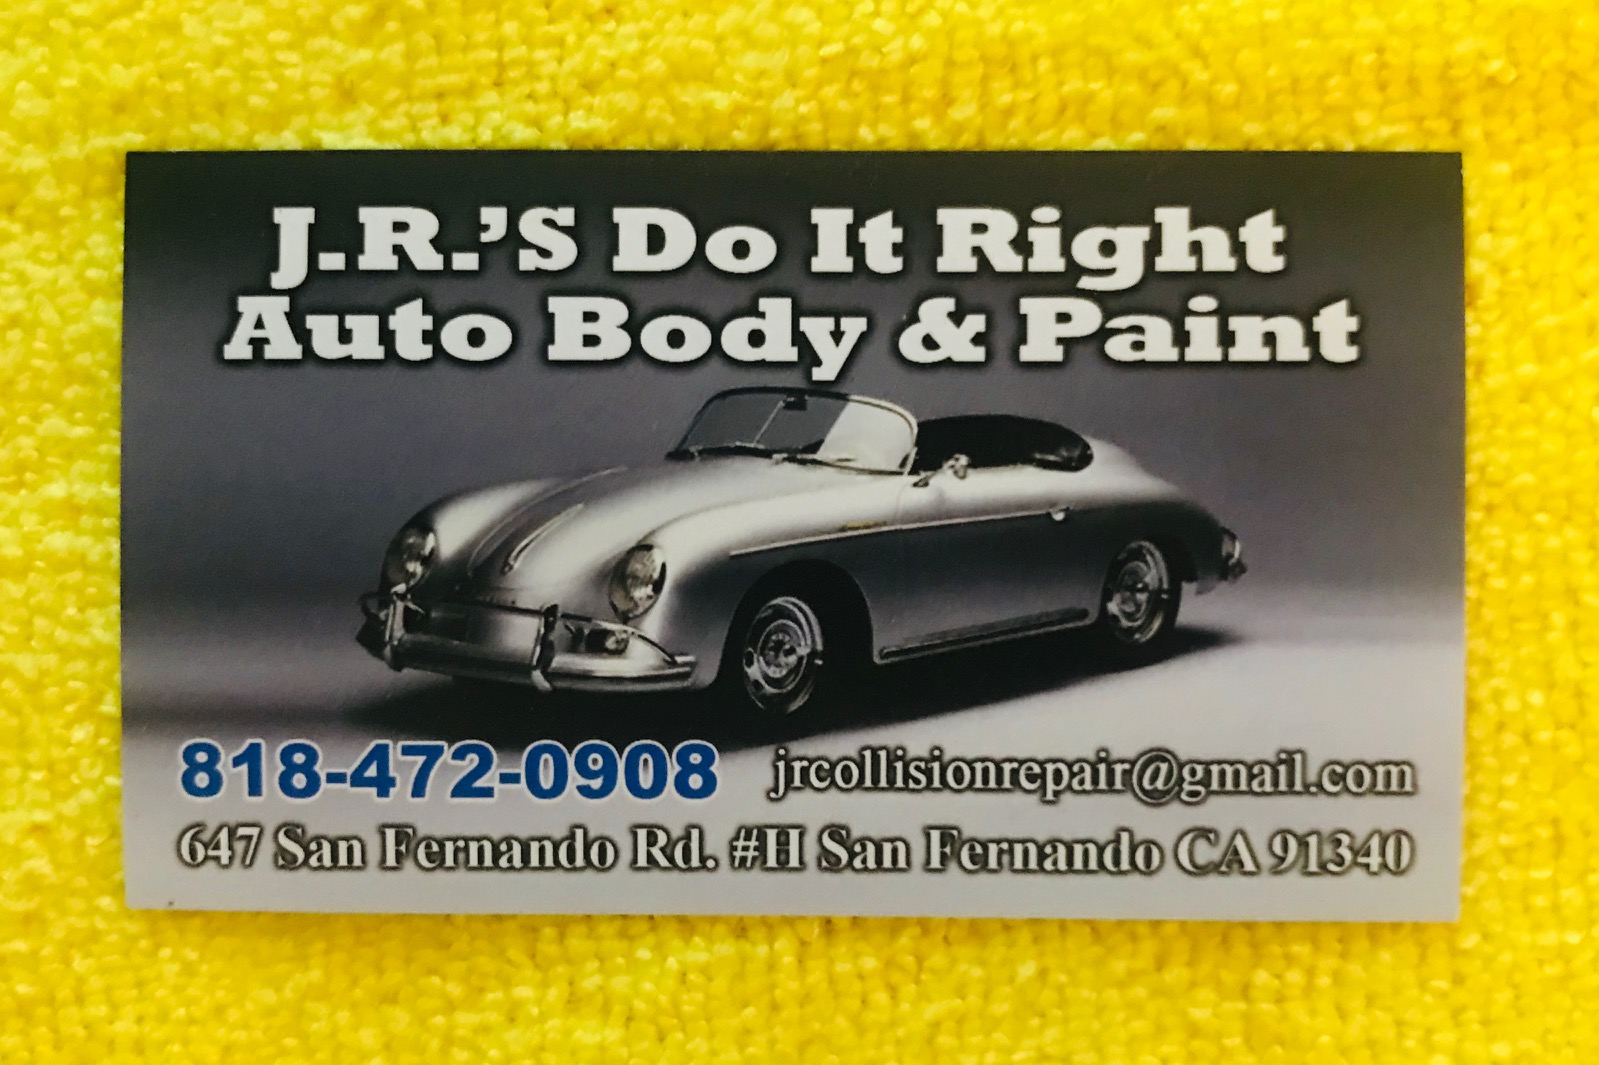 J.R.'S Do It Right Auto Body